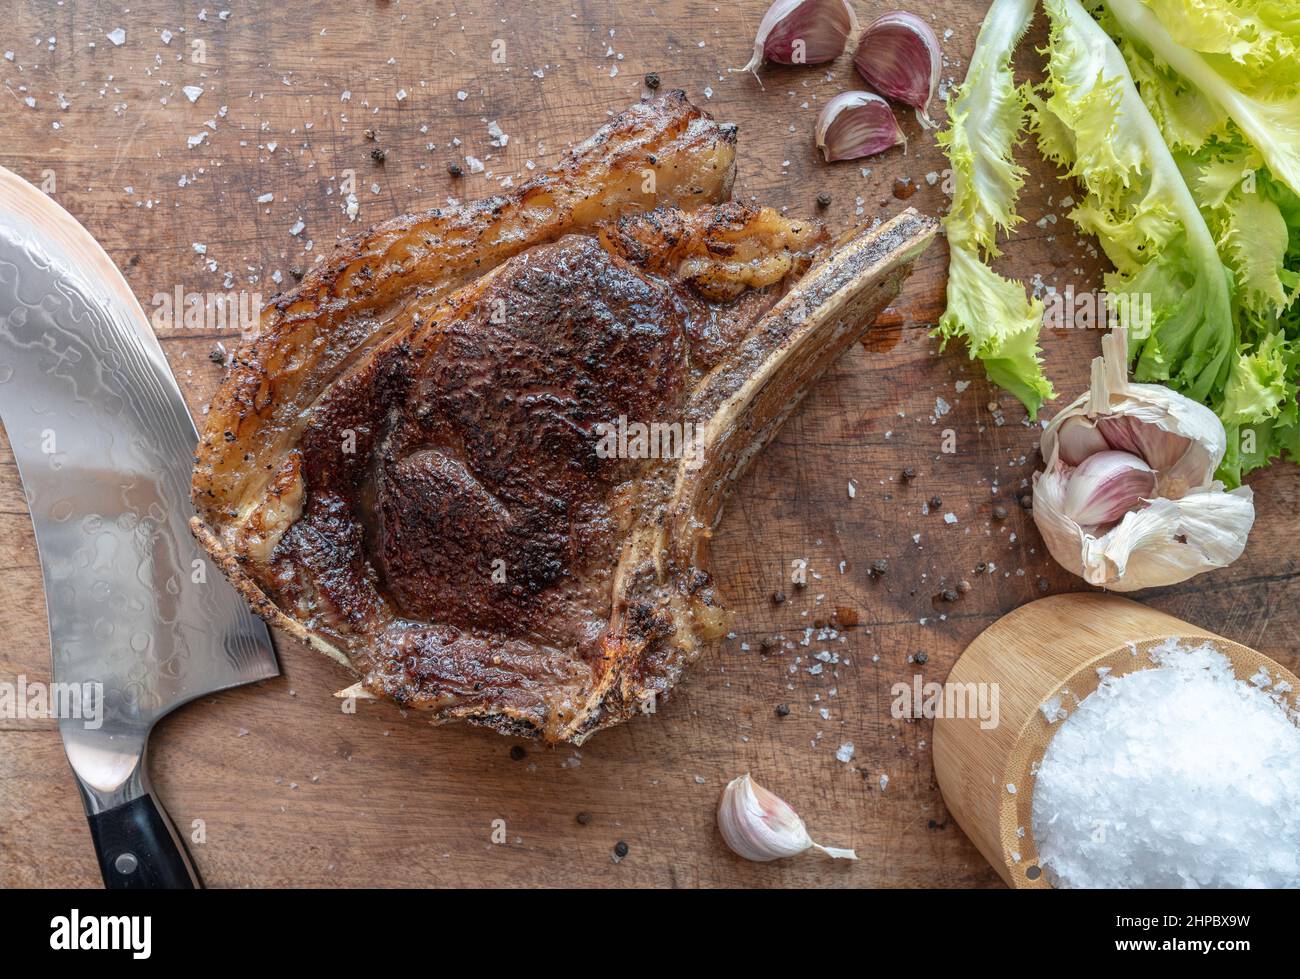 Sous Vide gekochtes mittelseltenes, trocken gereiftetes rubia Gallega Rindersteak mit Messer, Meersalzflocken, Knoblauch, Pfeffer und Salat auf einem Holzbrett Stockfoto